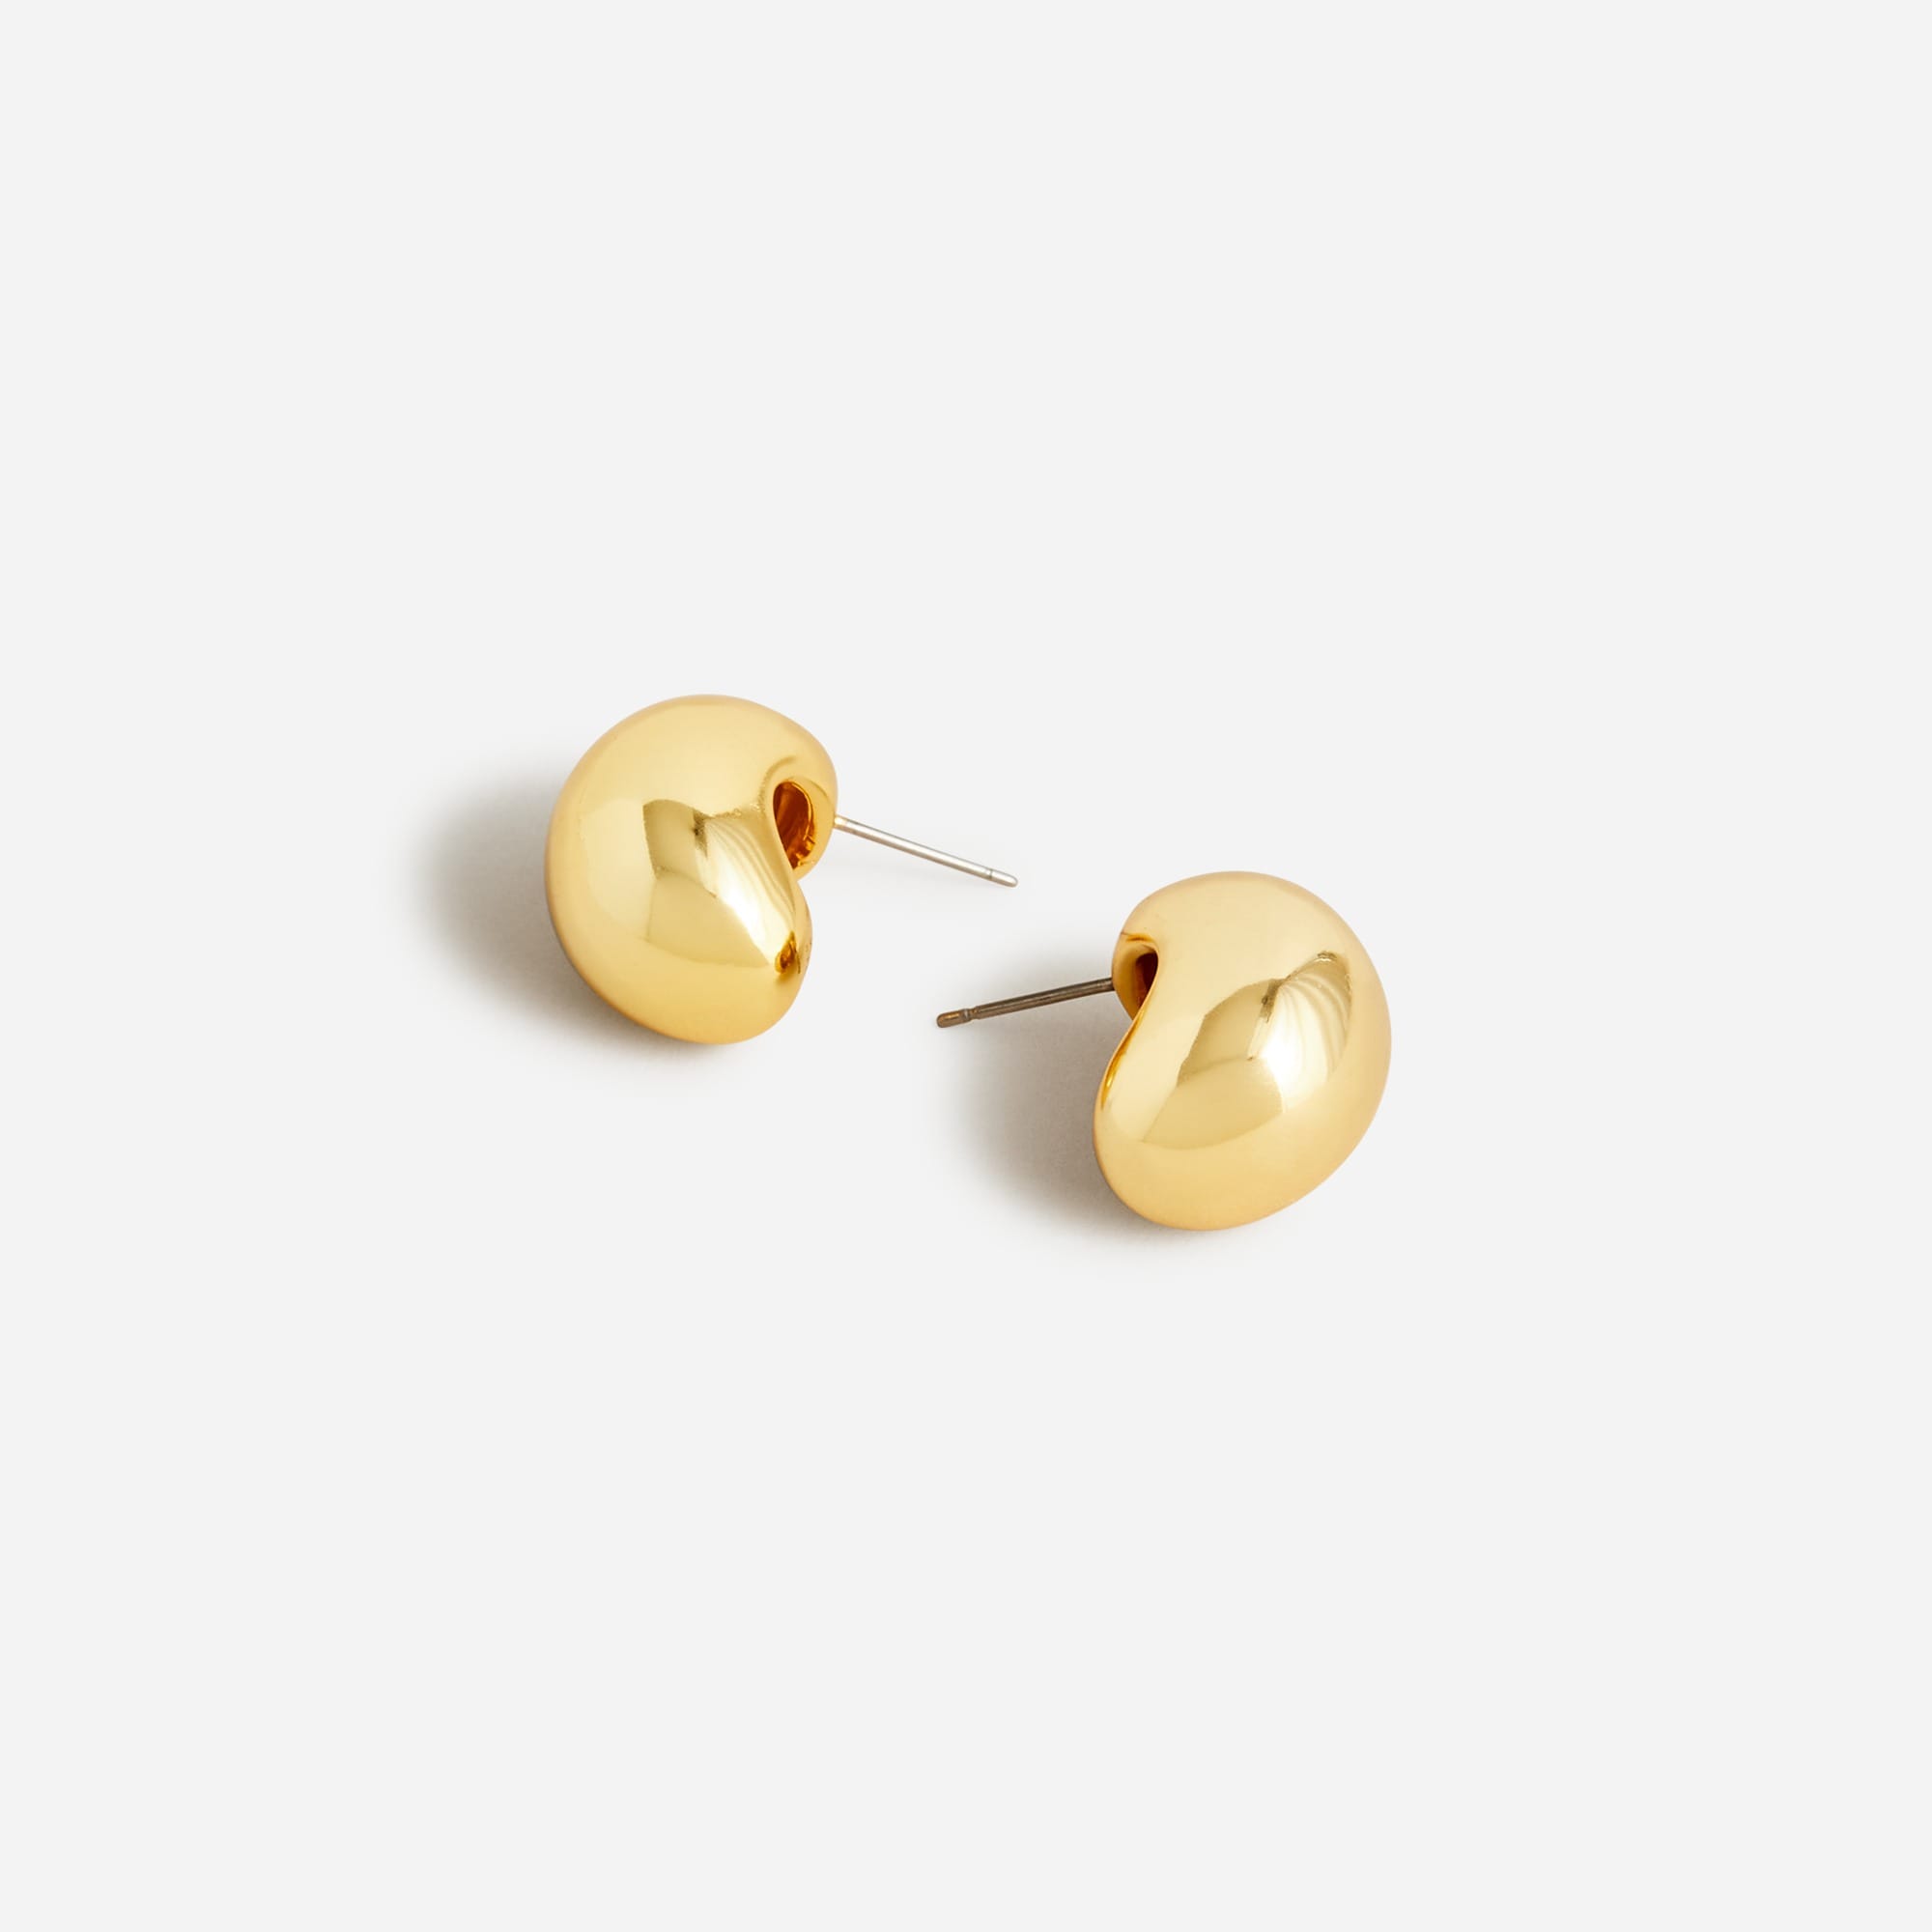  Sculptural orb earrings